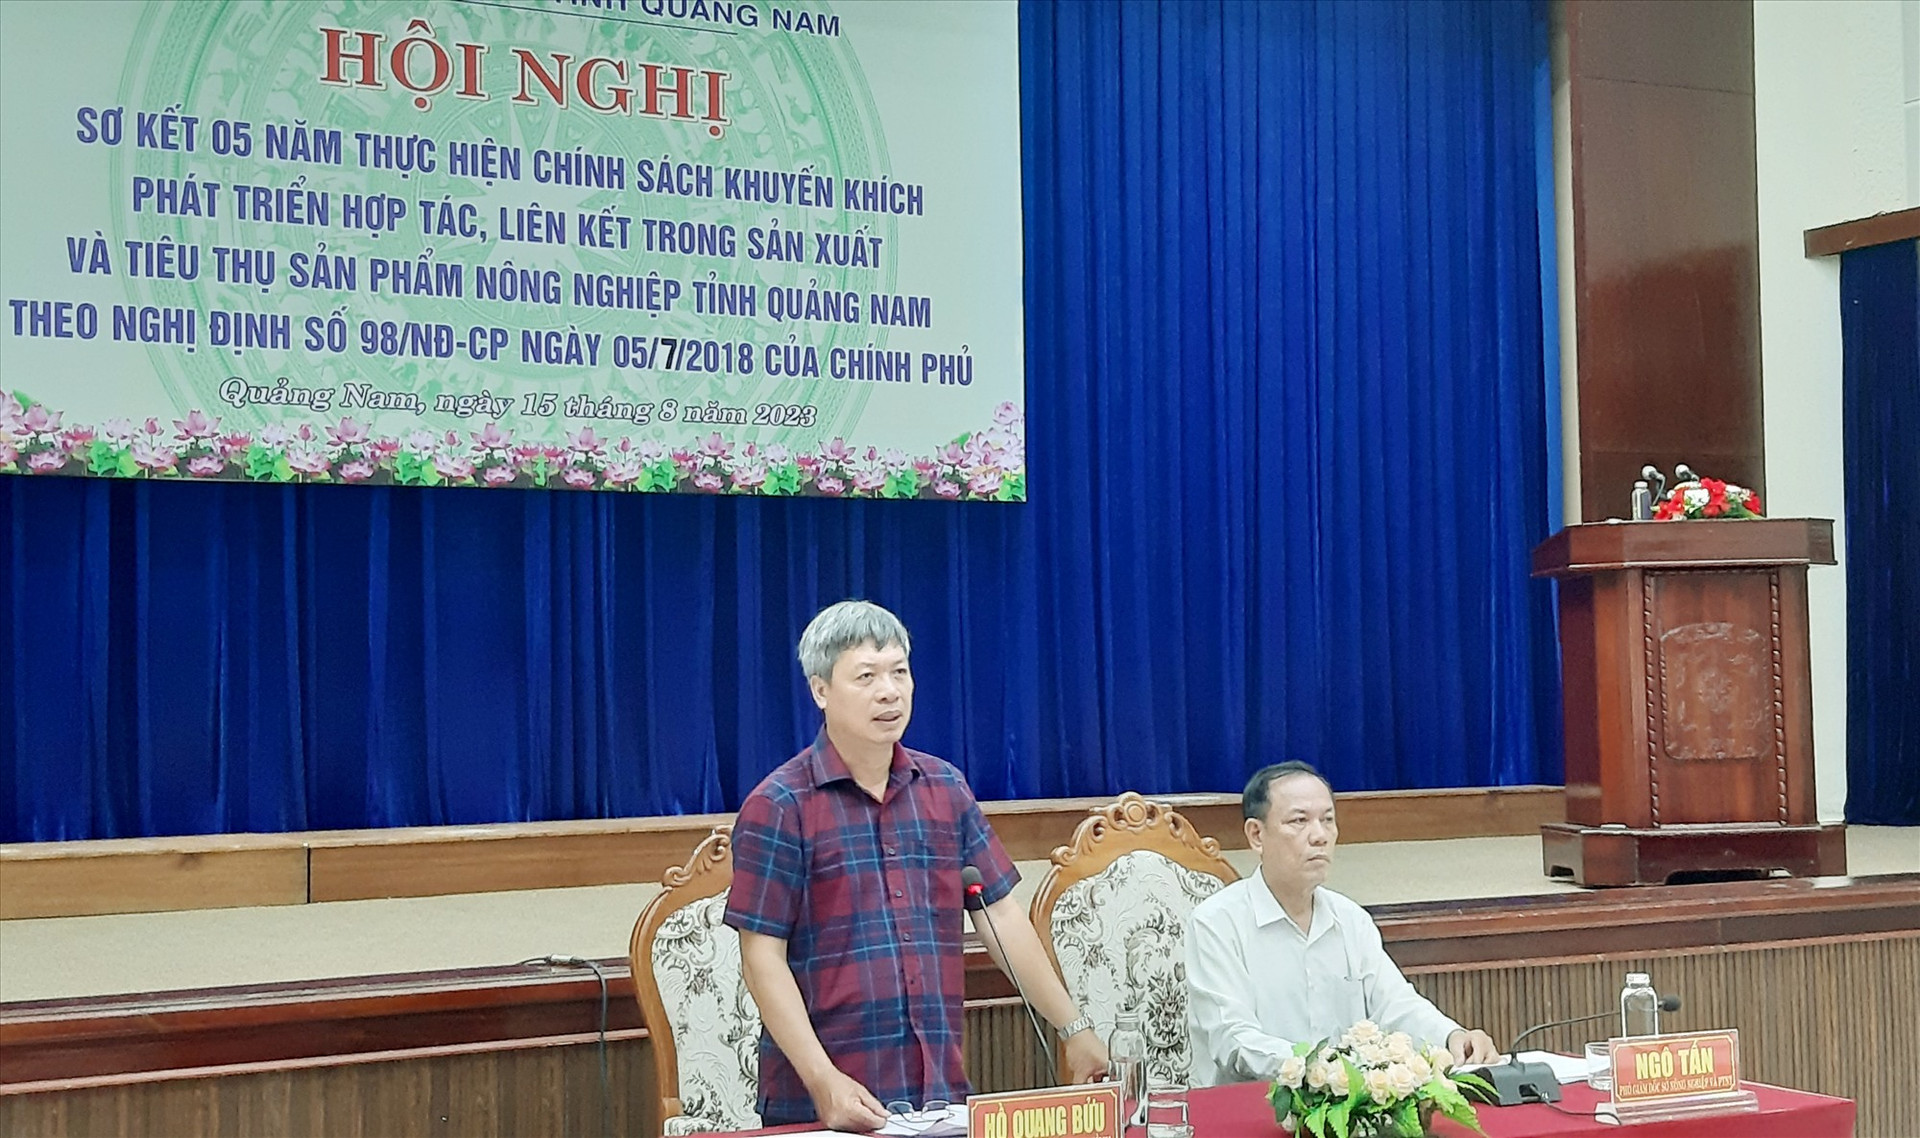 Phó Chủ tịch UBND tỉnh Hồ Quang Bửu phát biểu tại hội nghị. Ảnh: N.S